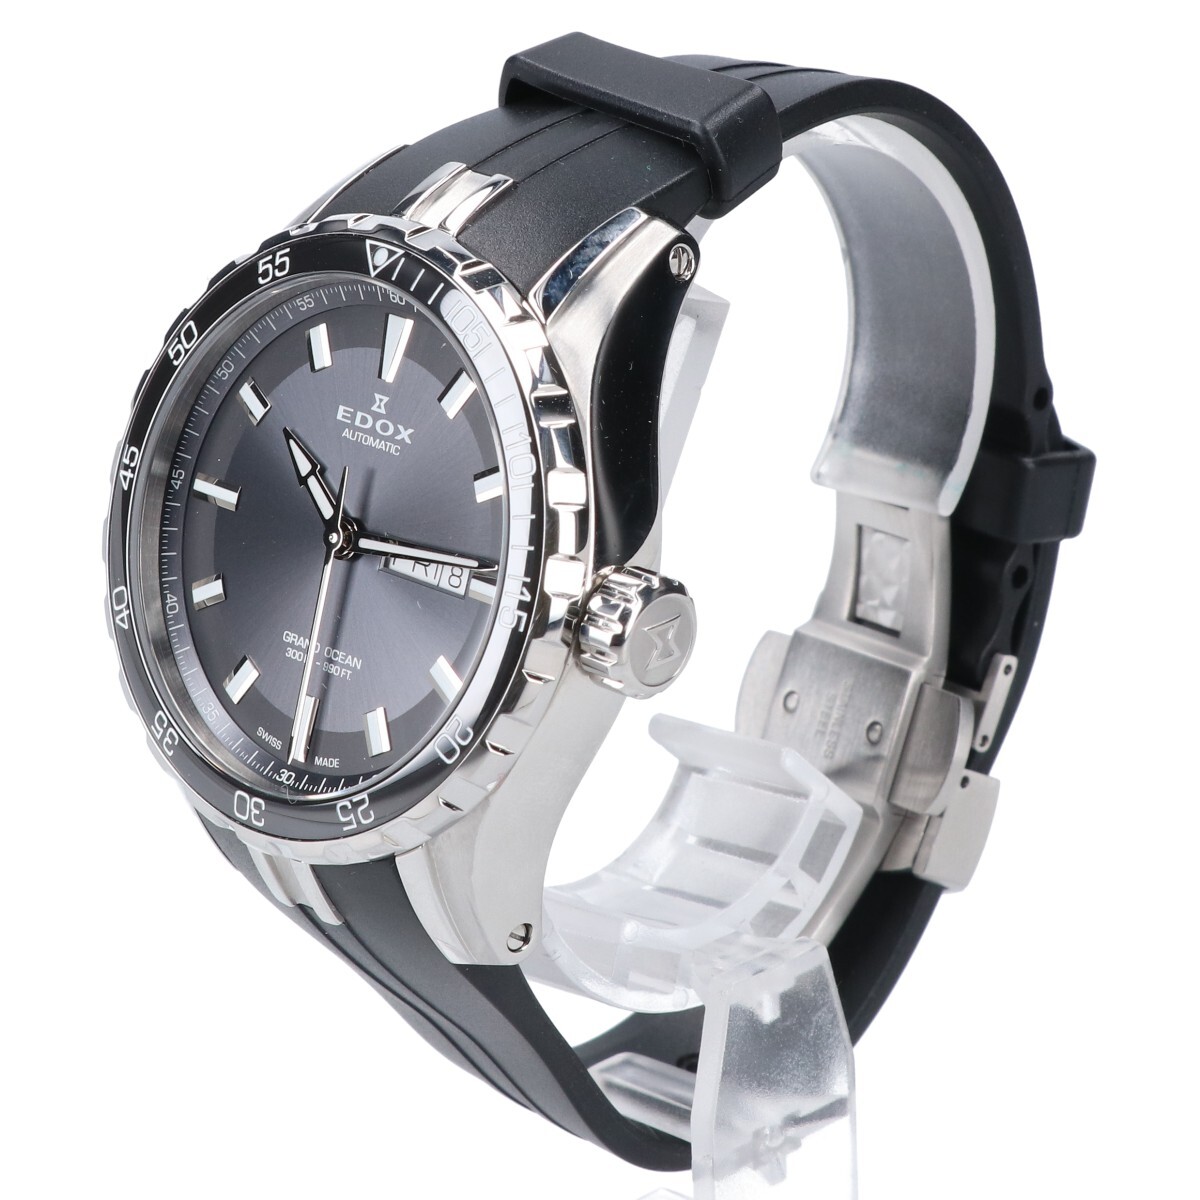  прекрасный товар EDOX Ed ks88002-3CA-NIN GRAND OCEAN AUTOMATIC Grand Ocean автоматический самозаводящиеся часы наручные часы серебряный / черный 